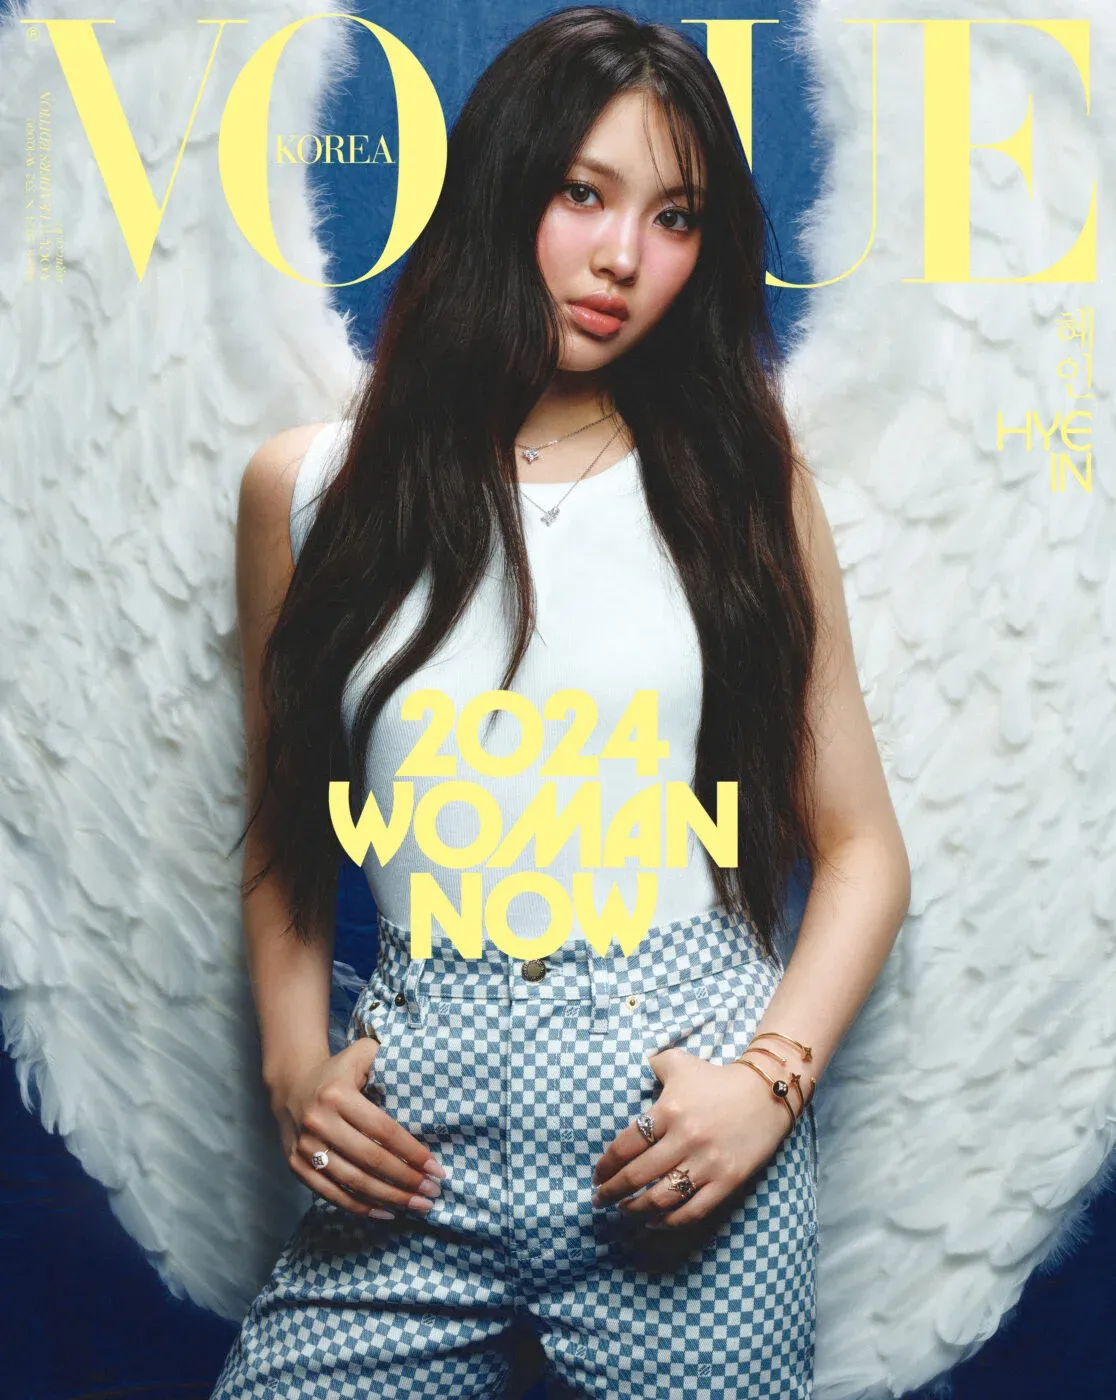 Vogue Coreia escolhe 24 mulheres que representam a geração contemporânea – Aqui estão todos os ídolos do K-Pop selecionados